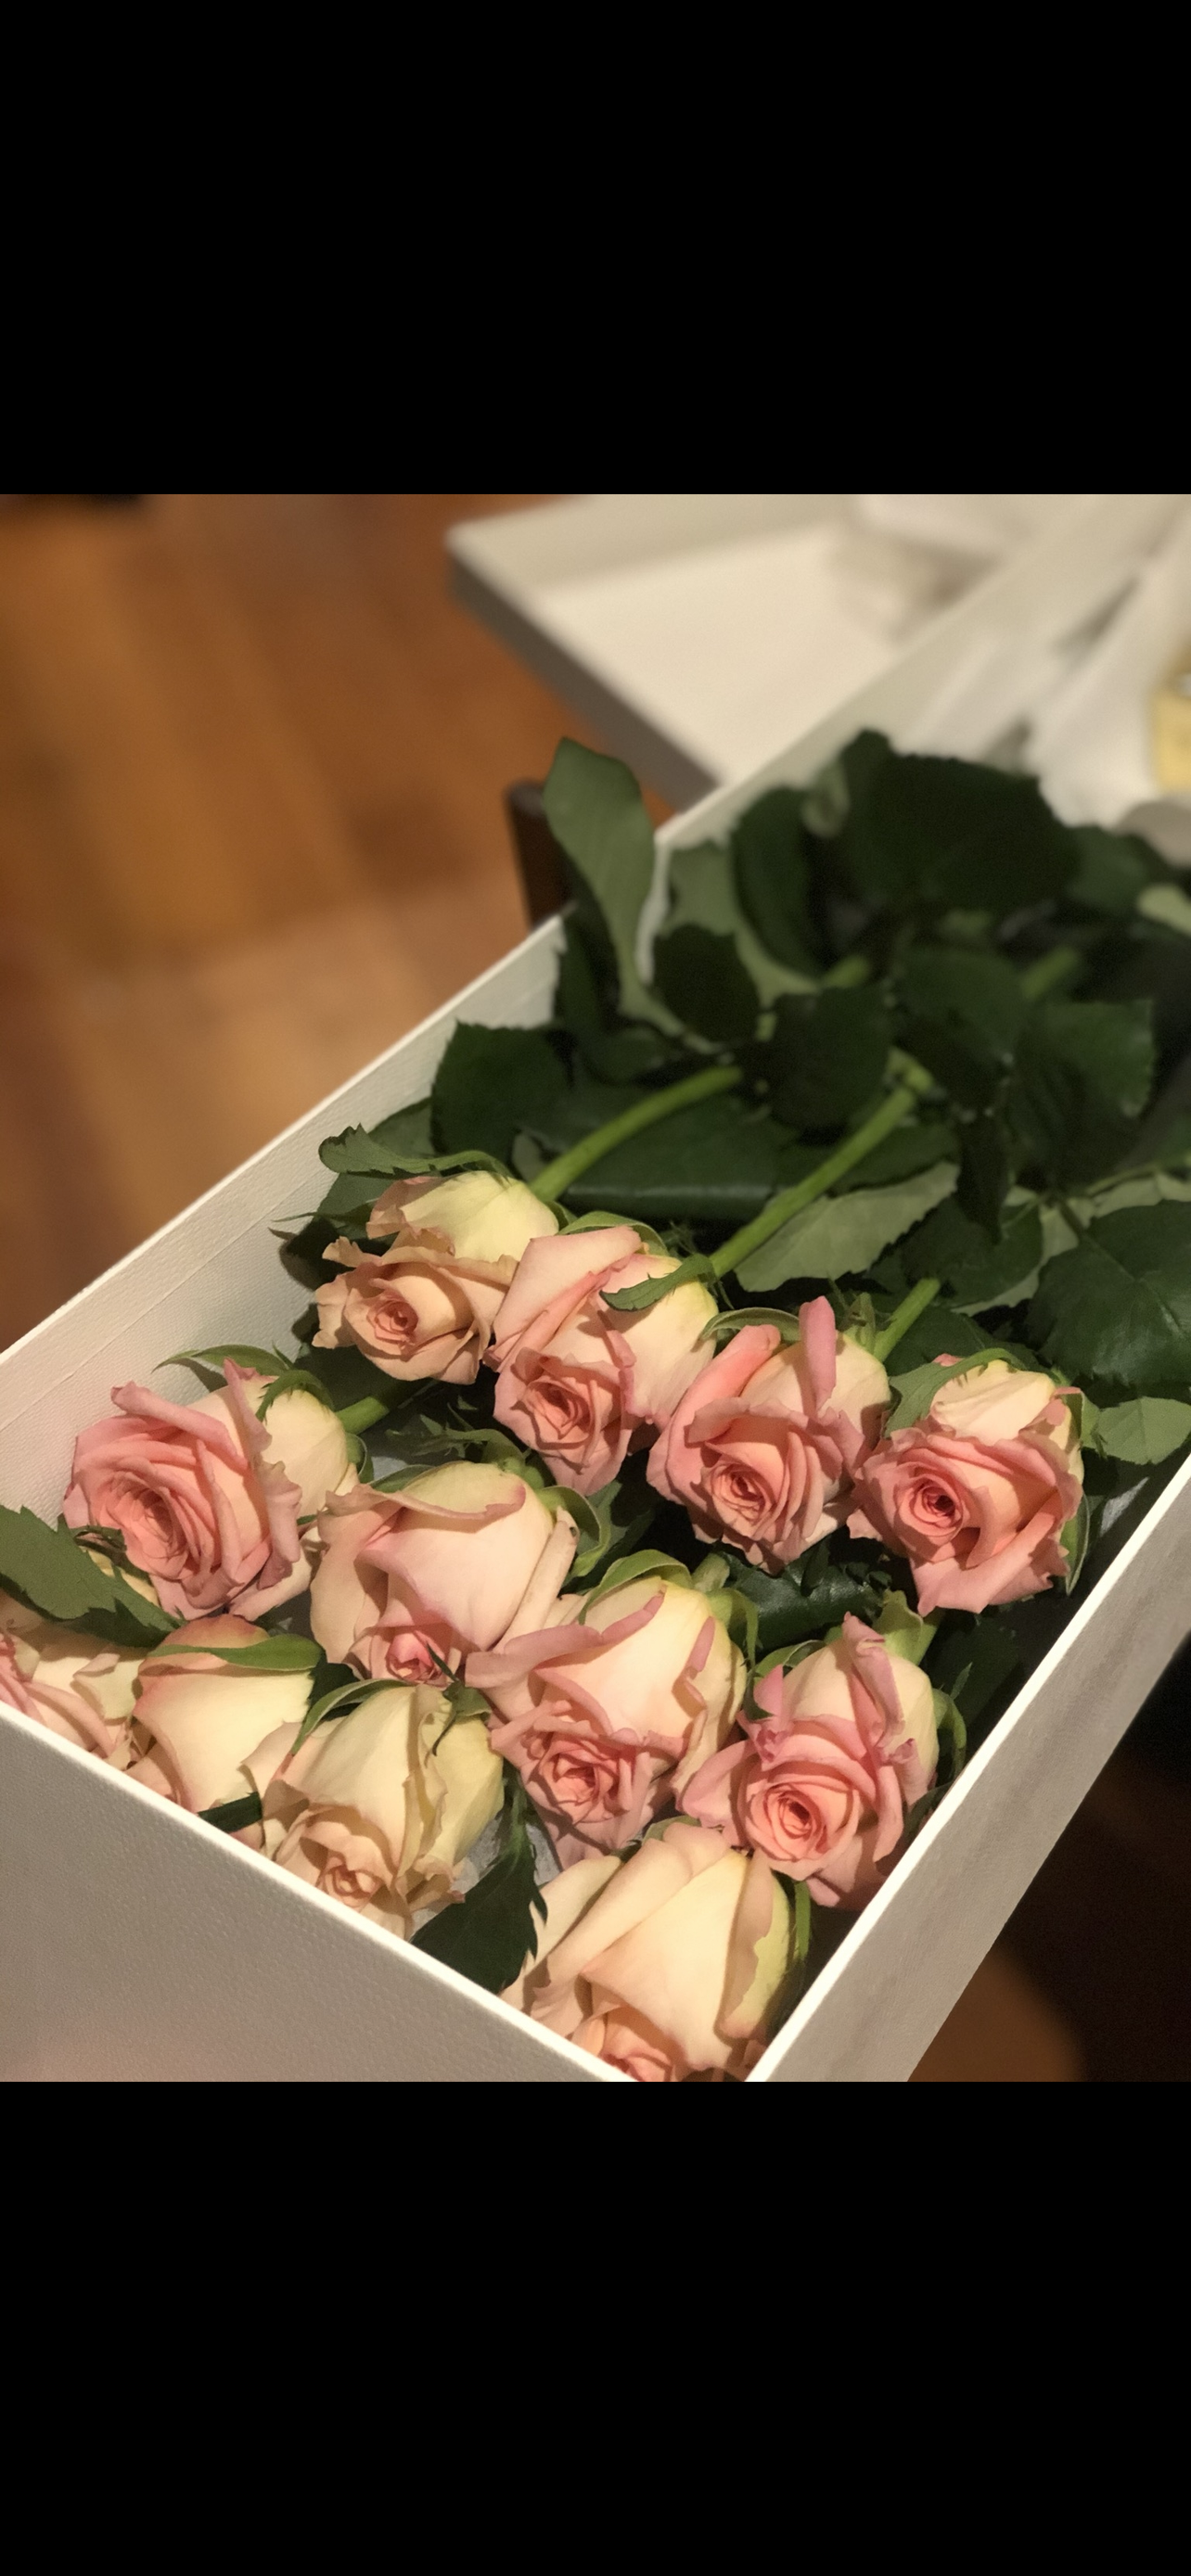 1 Dozen Long stemmed roses gift boxed